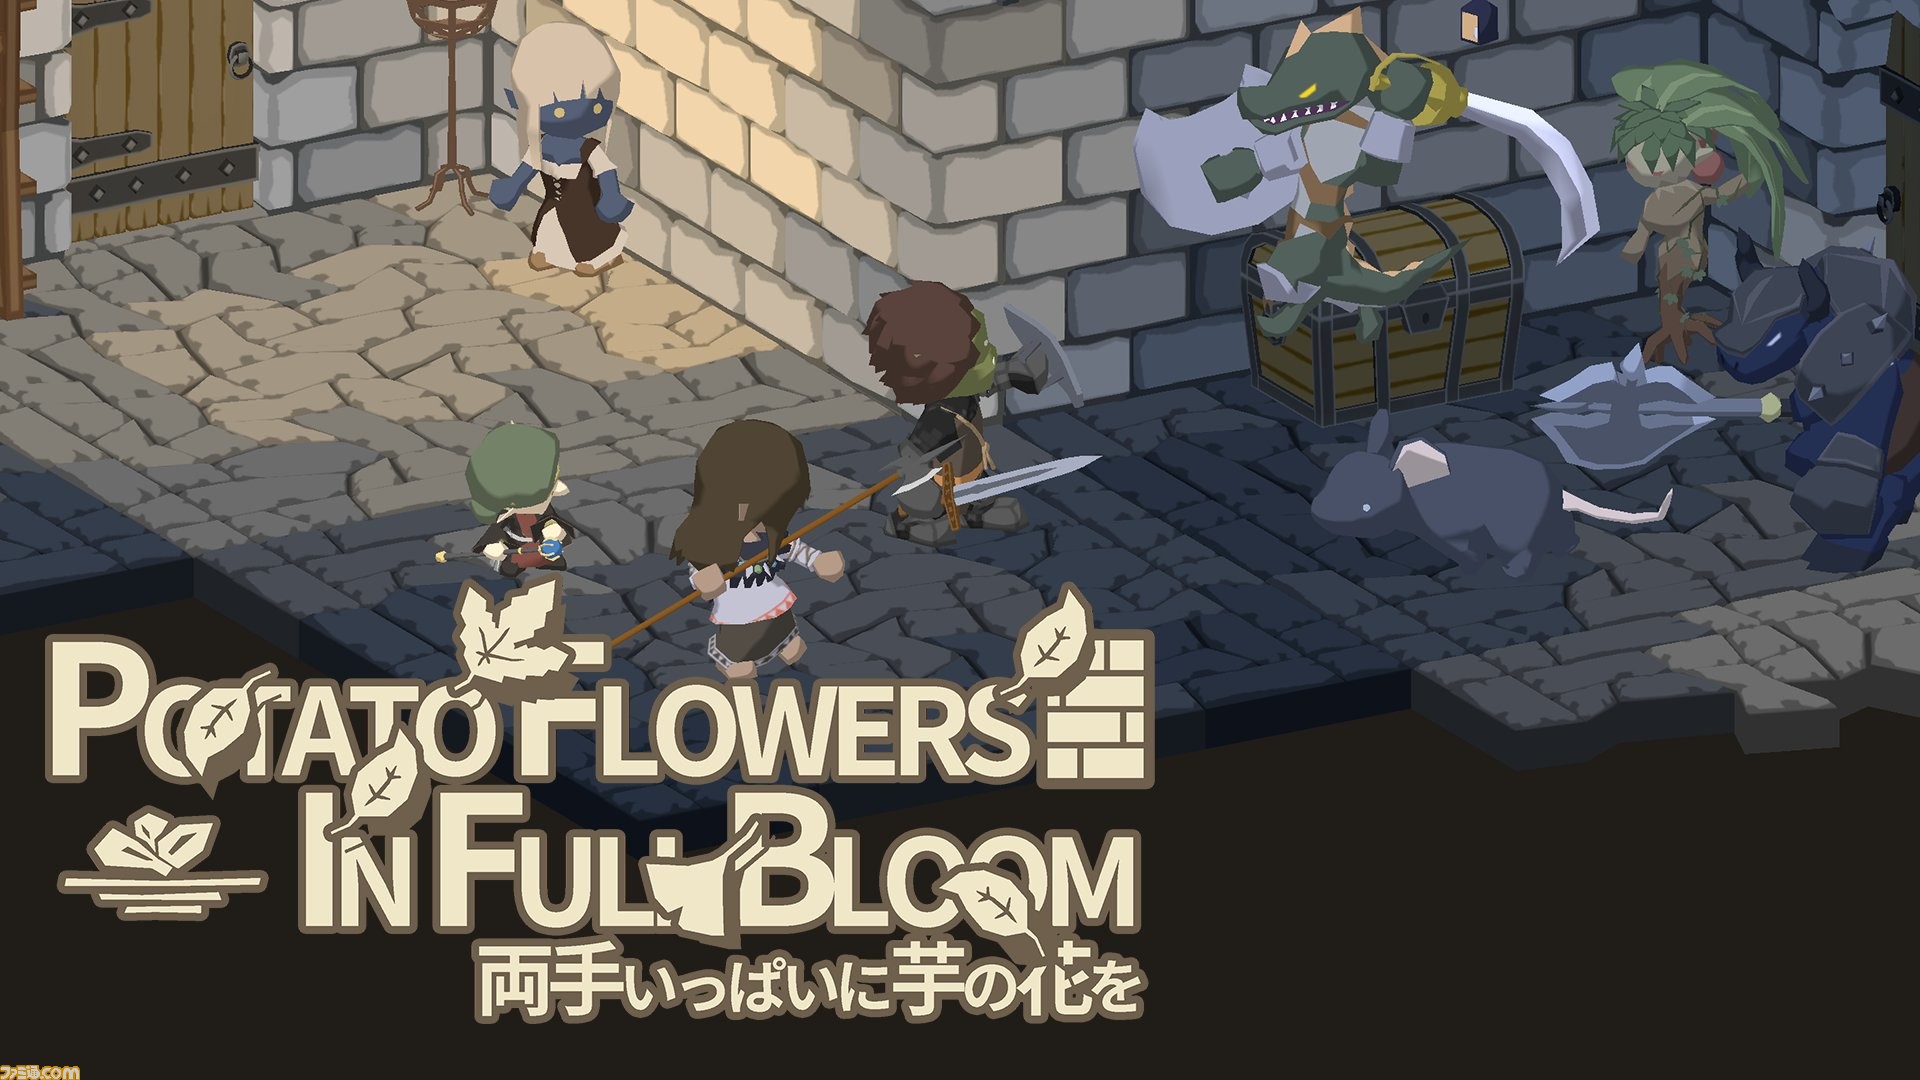 両手いっぱいに芋の花を Switch Steamで3月10日より配信 幻の作物の種を求めて迷宮を探索するダンジョンrpg ゲーム エンタメ最新情報のファミ通 Com